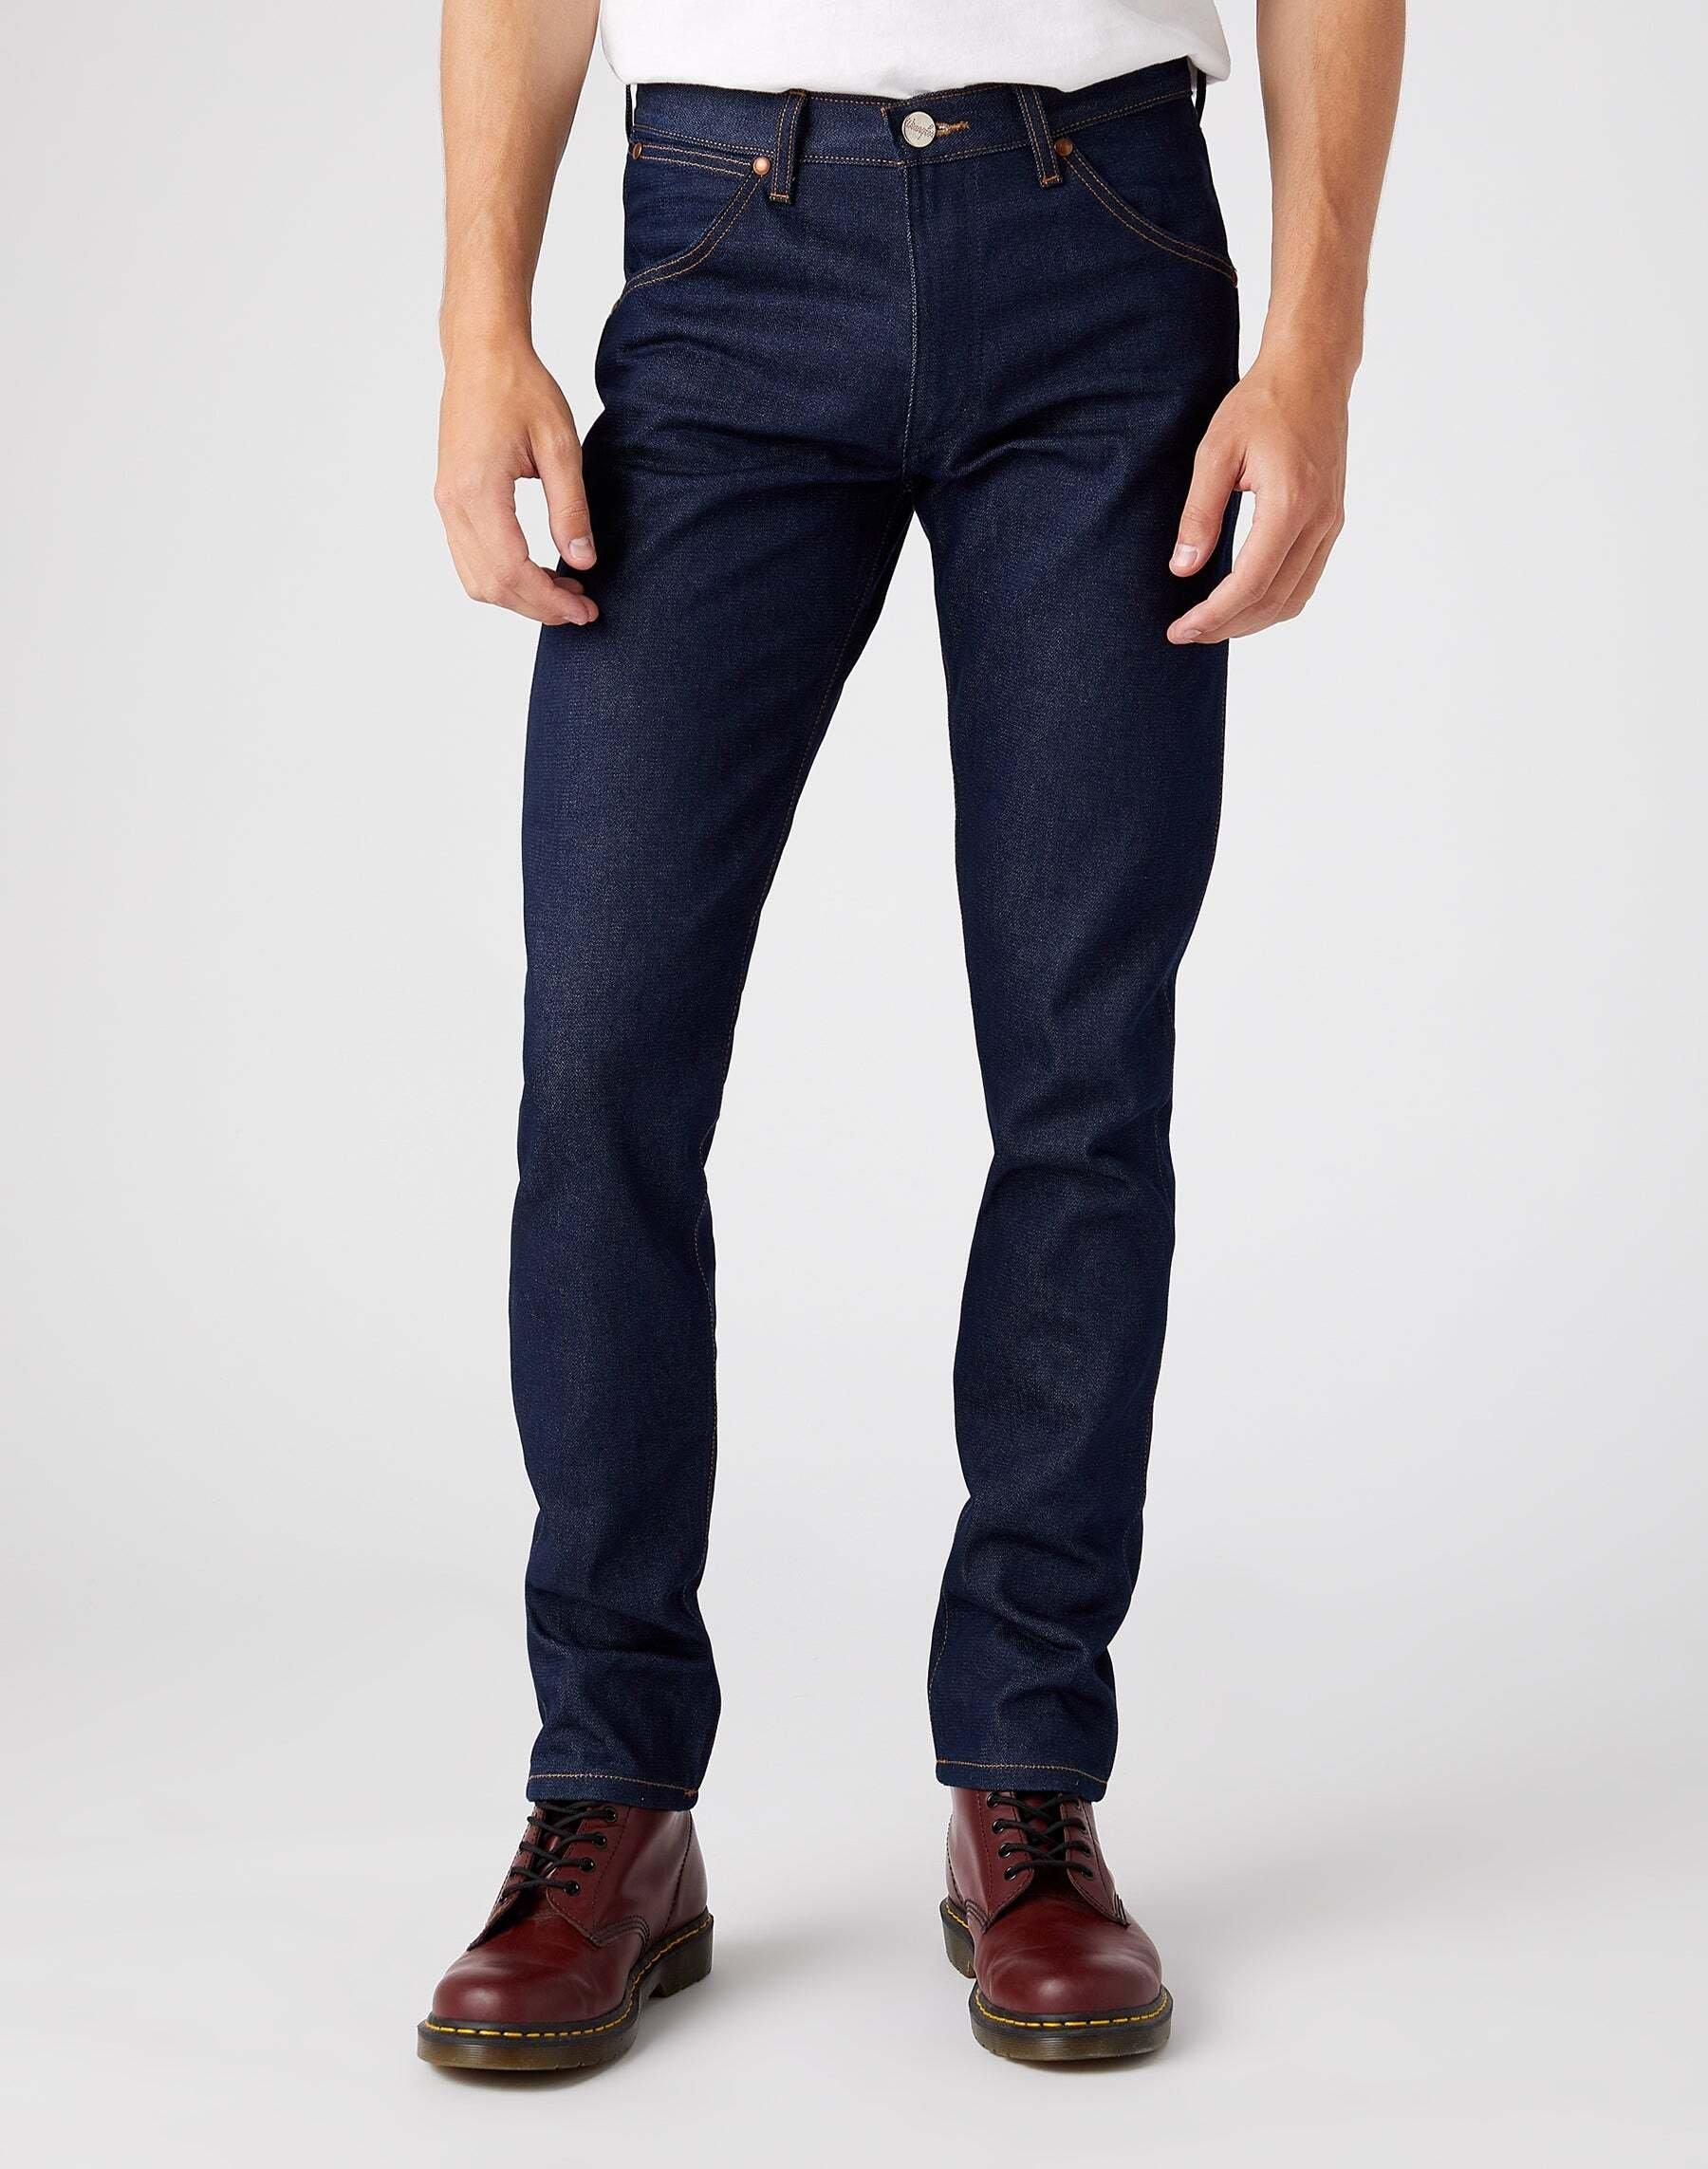 Jeans Slim Fit 11mwz Herren Blau Denim L34/W30 von Wrangler